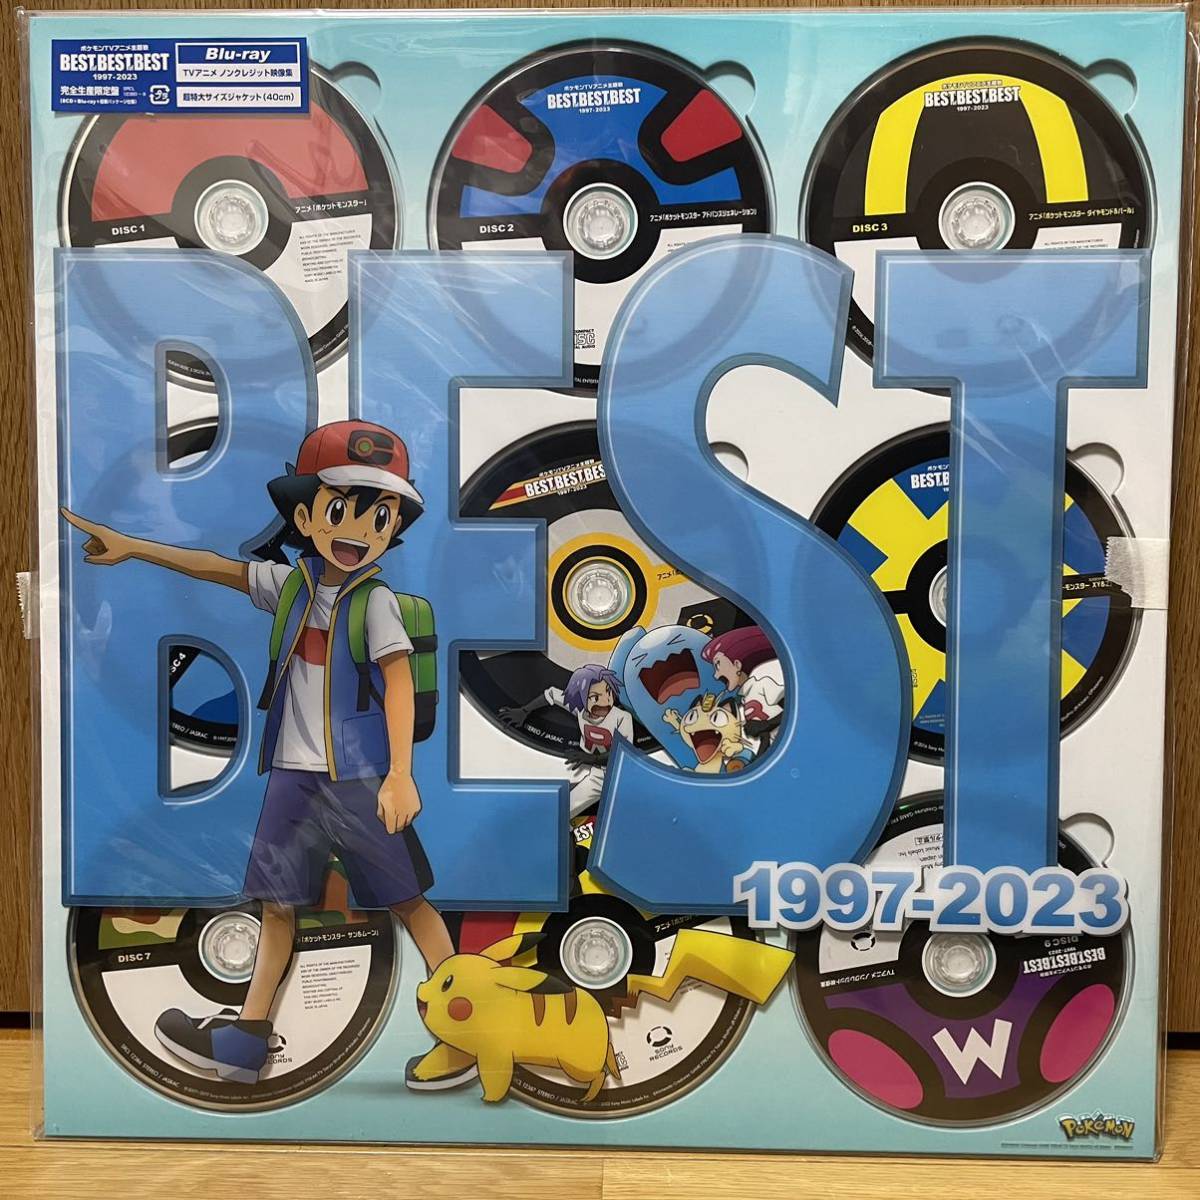 2021公式店舗ポケモンTVアニメ主題歌 BEST OF BEST OF BEST ブルーレイ